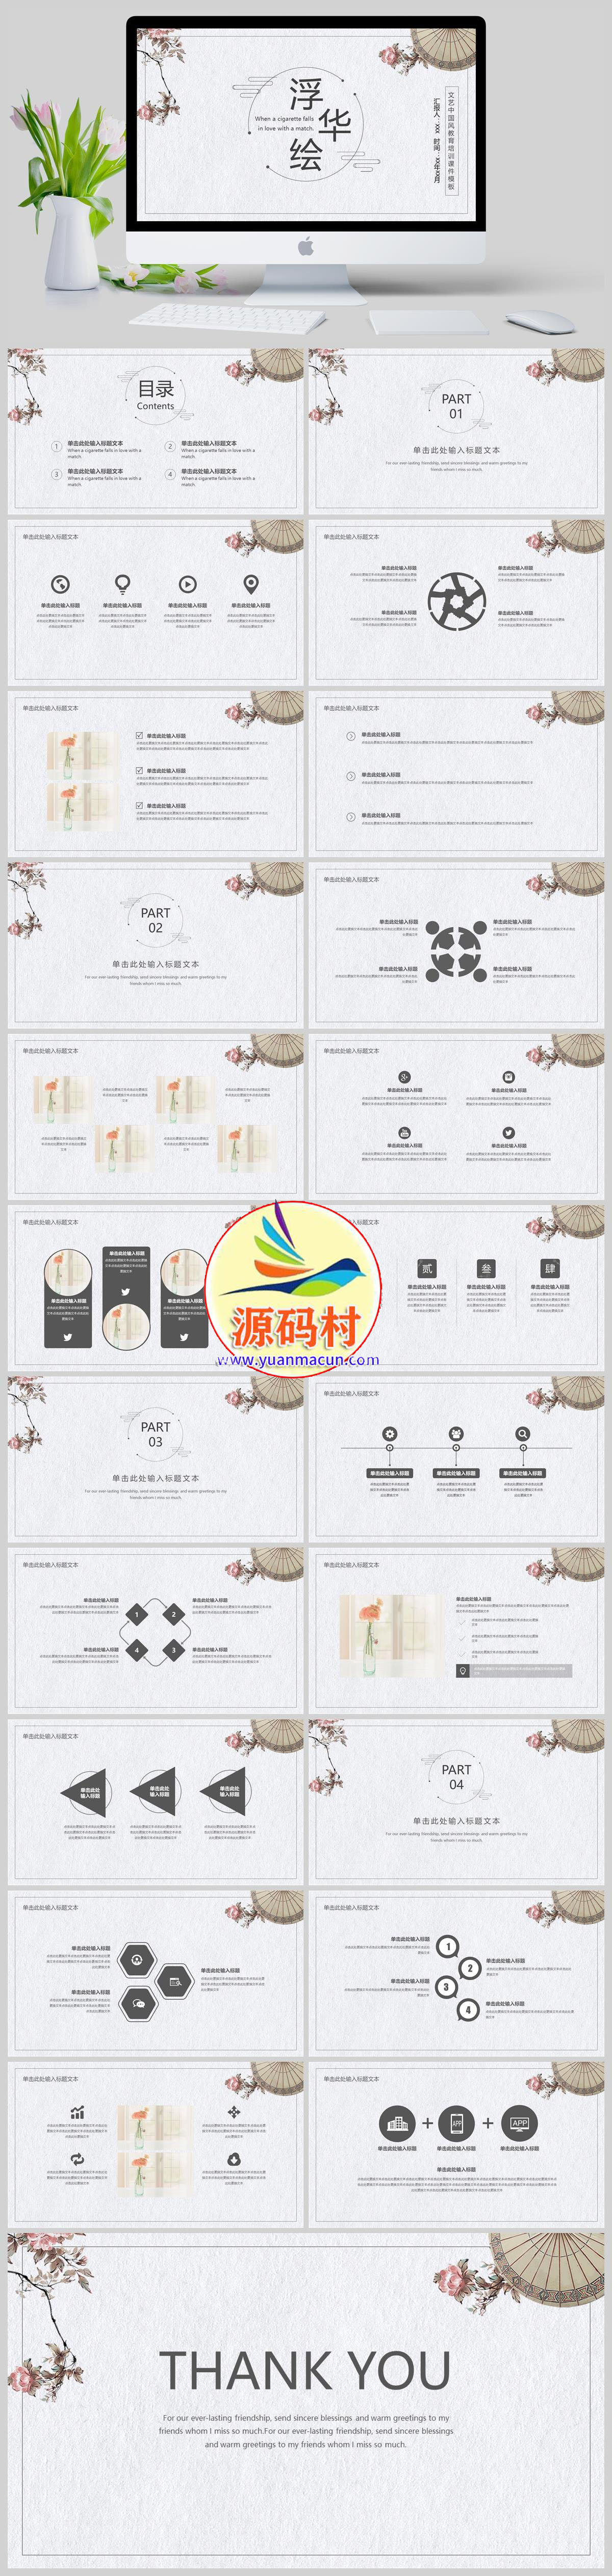 古典文艺中国风教育培训课件PPT模板下载免费下载